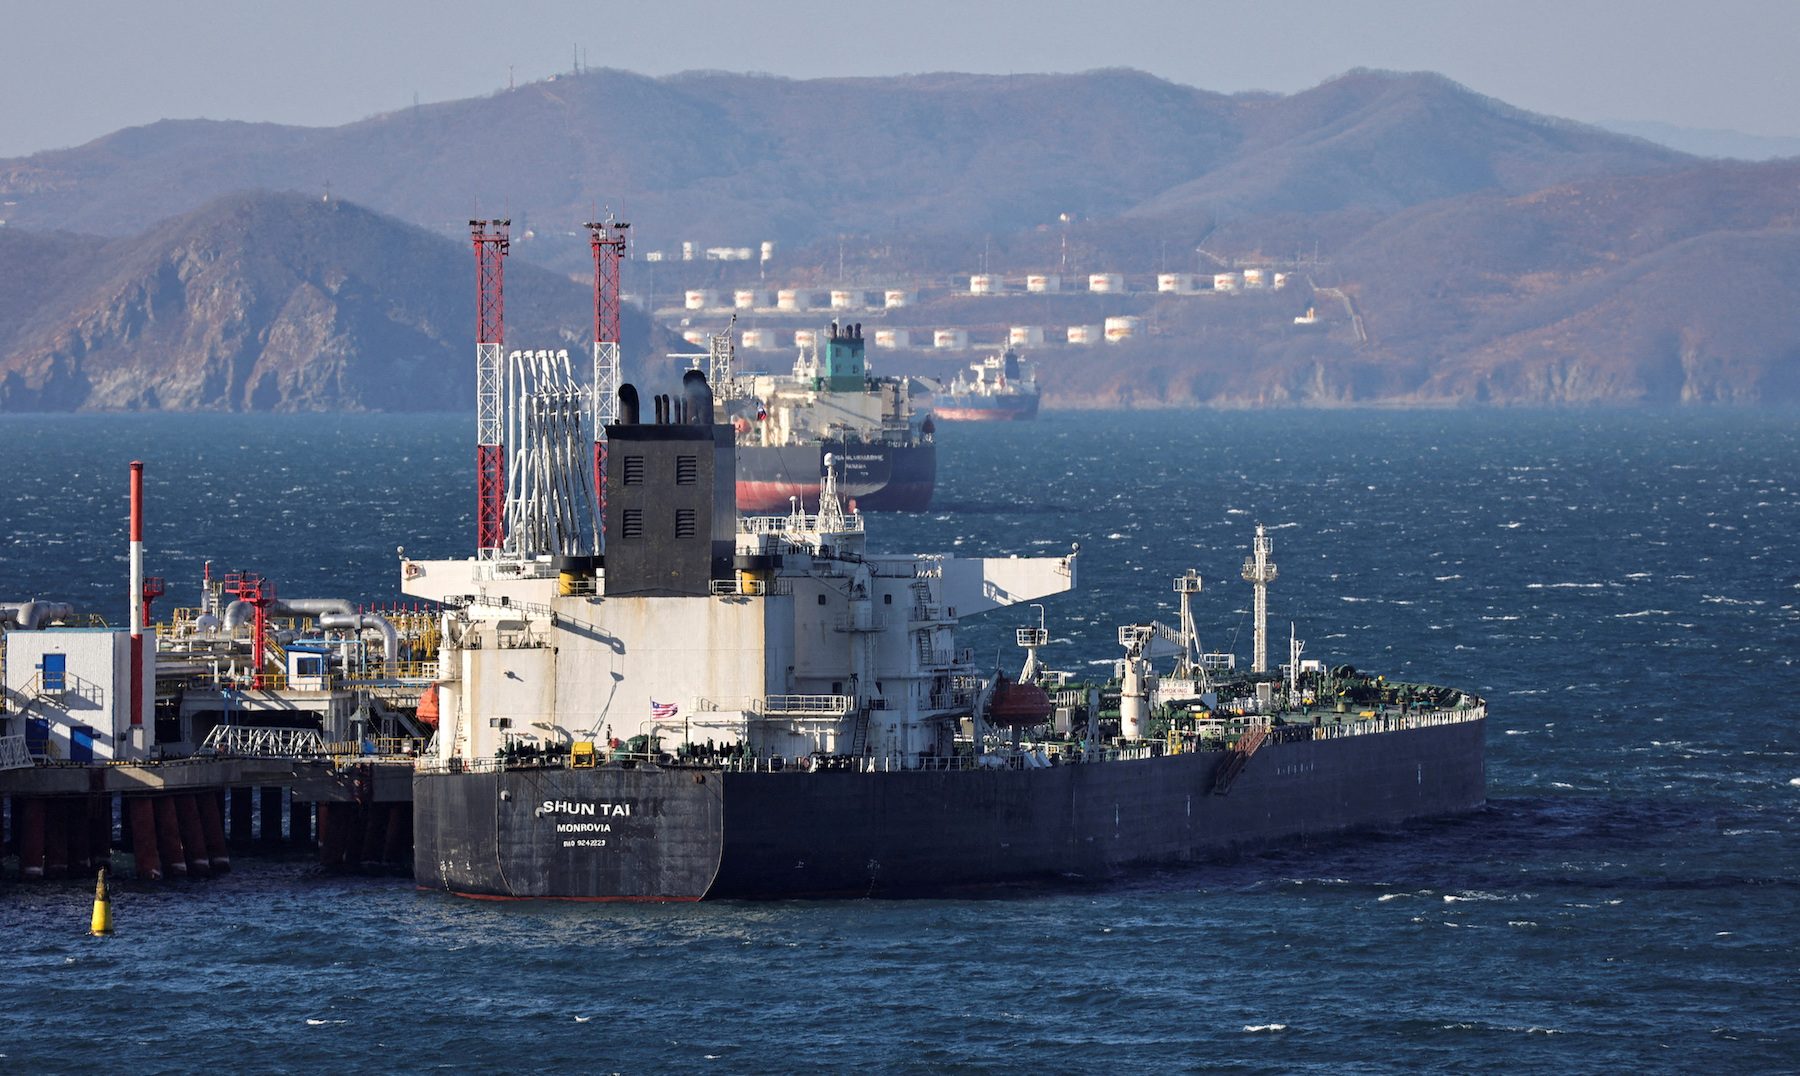 Lost Russian oil revenue is bonanza for shippers, refiners